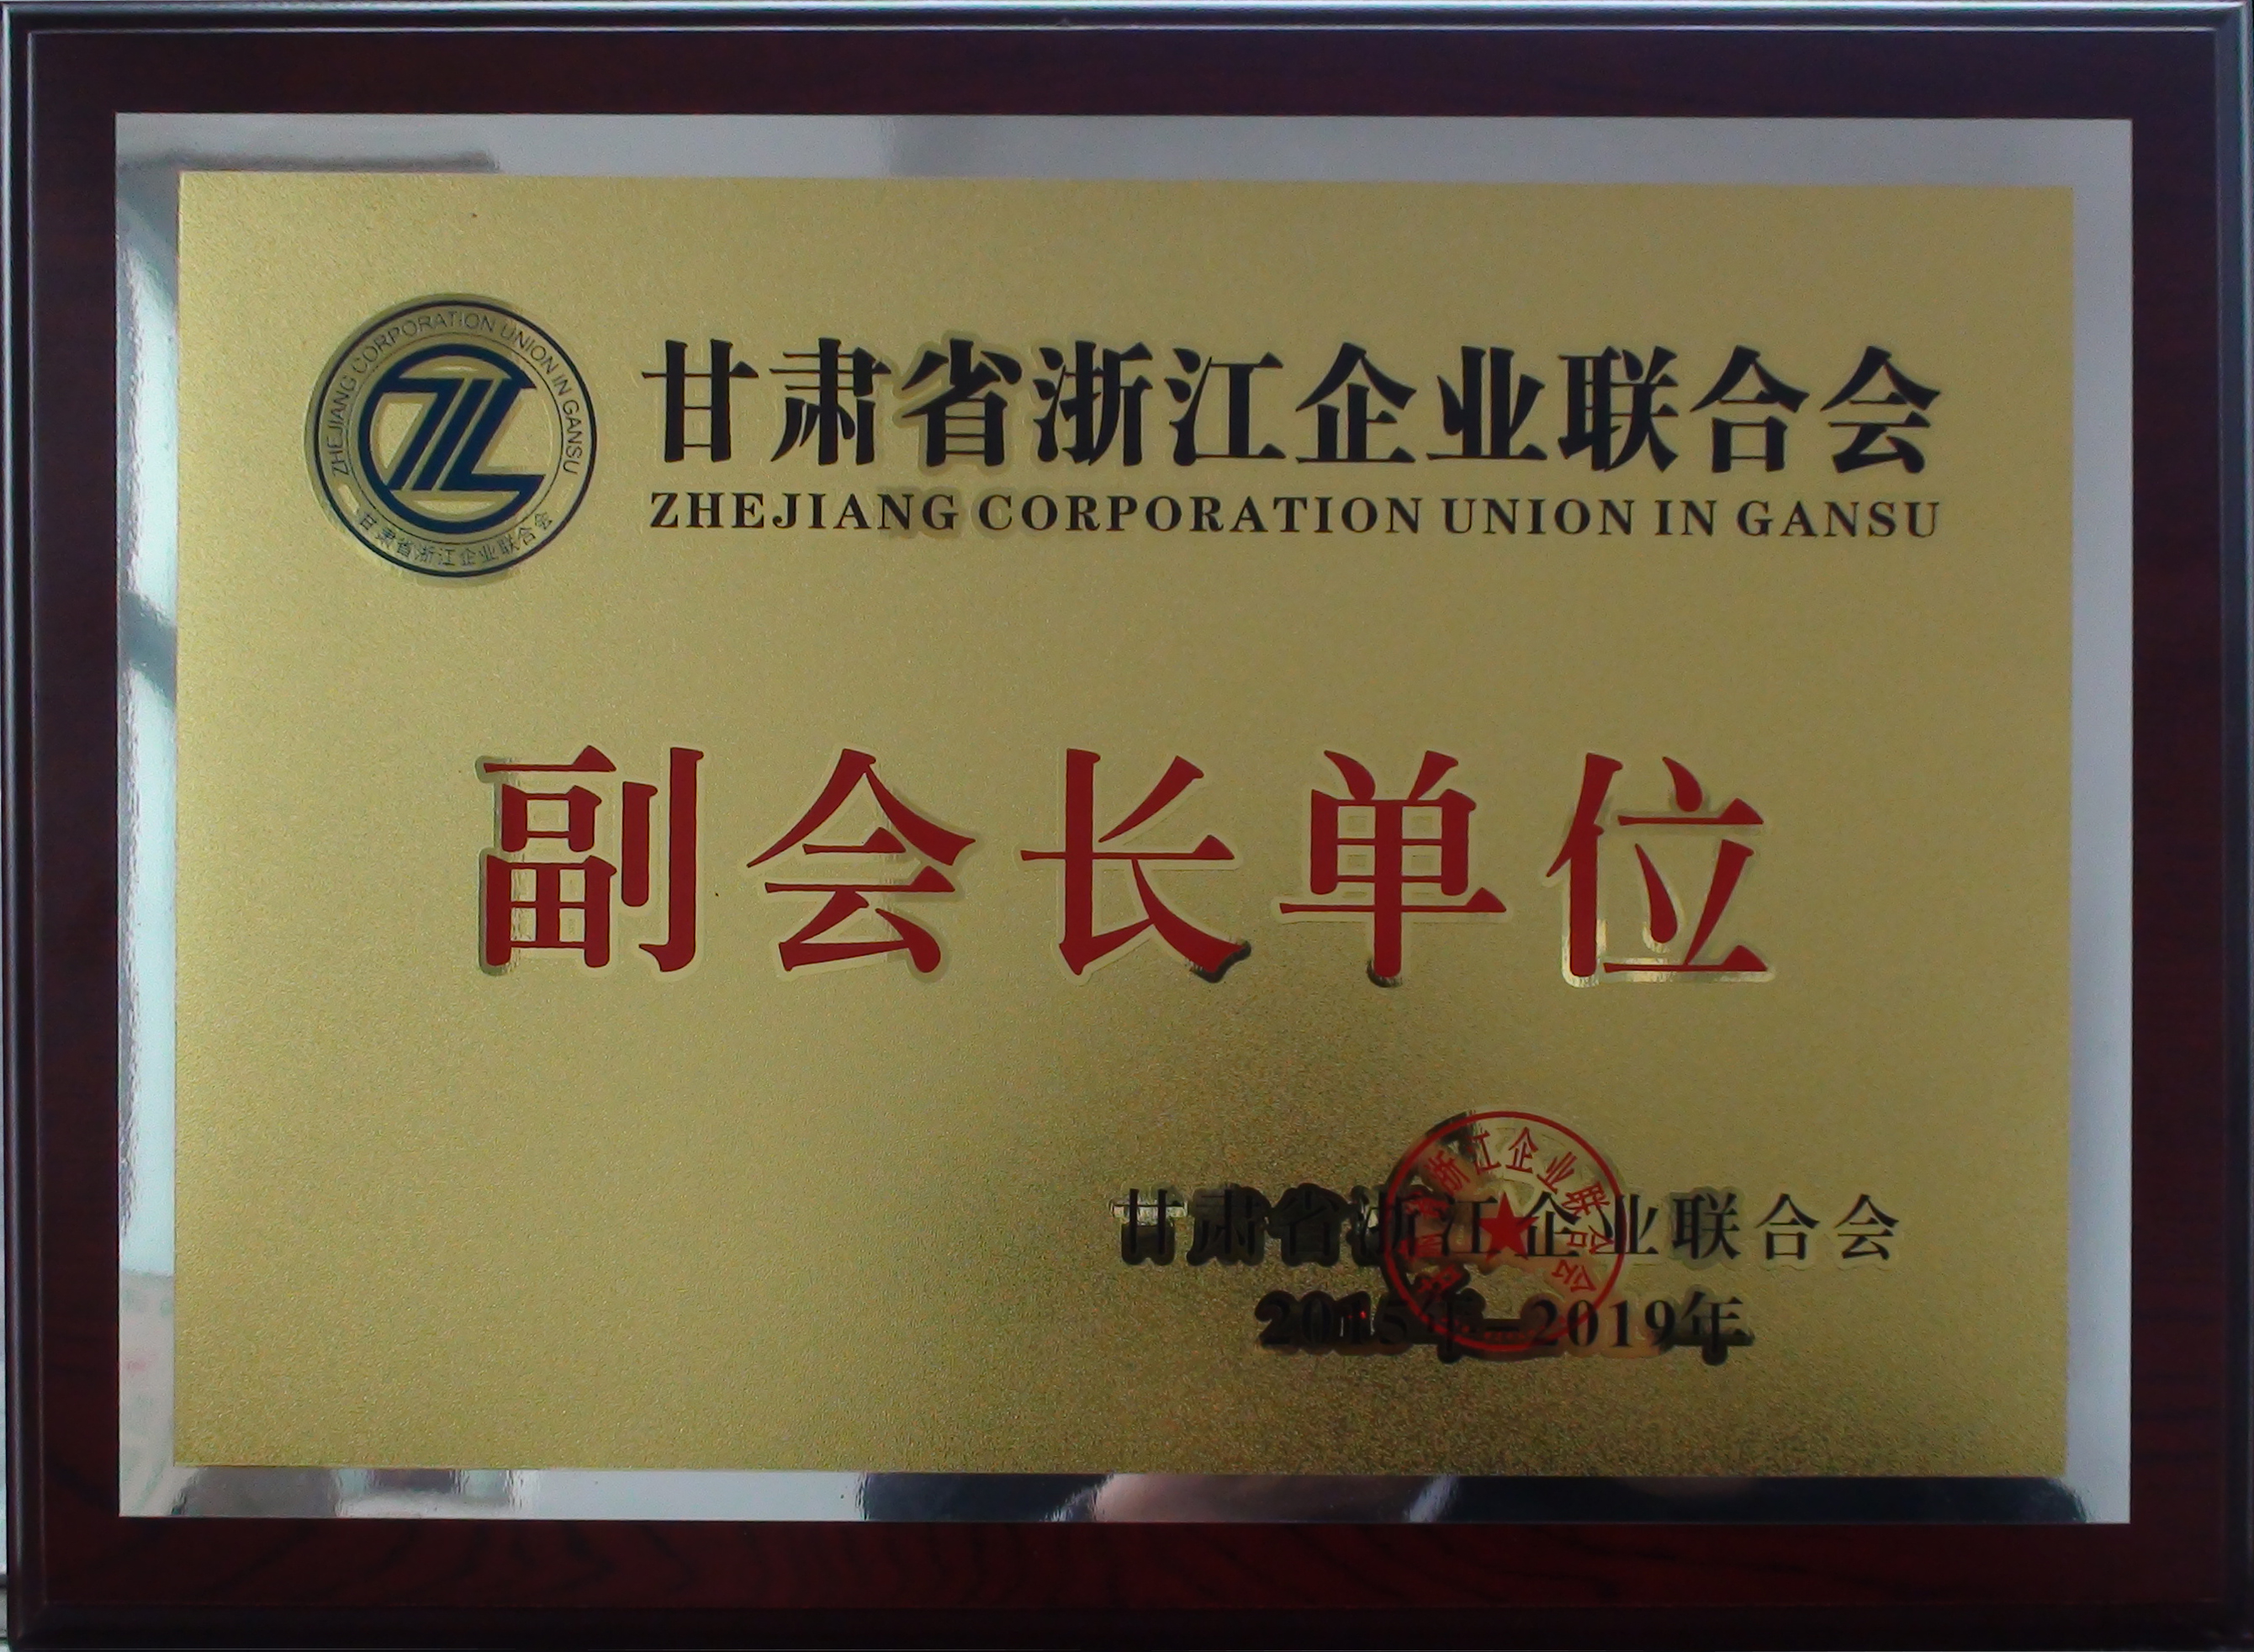 授予：甘肃省浙江企业联合会“副会长单位”